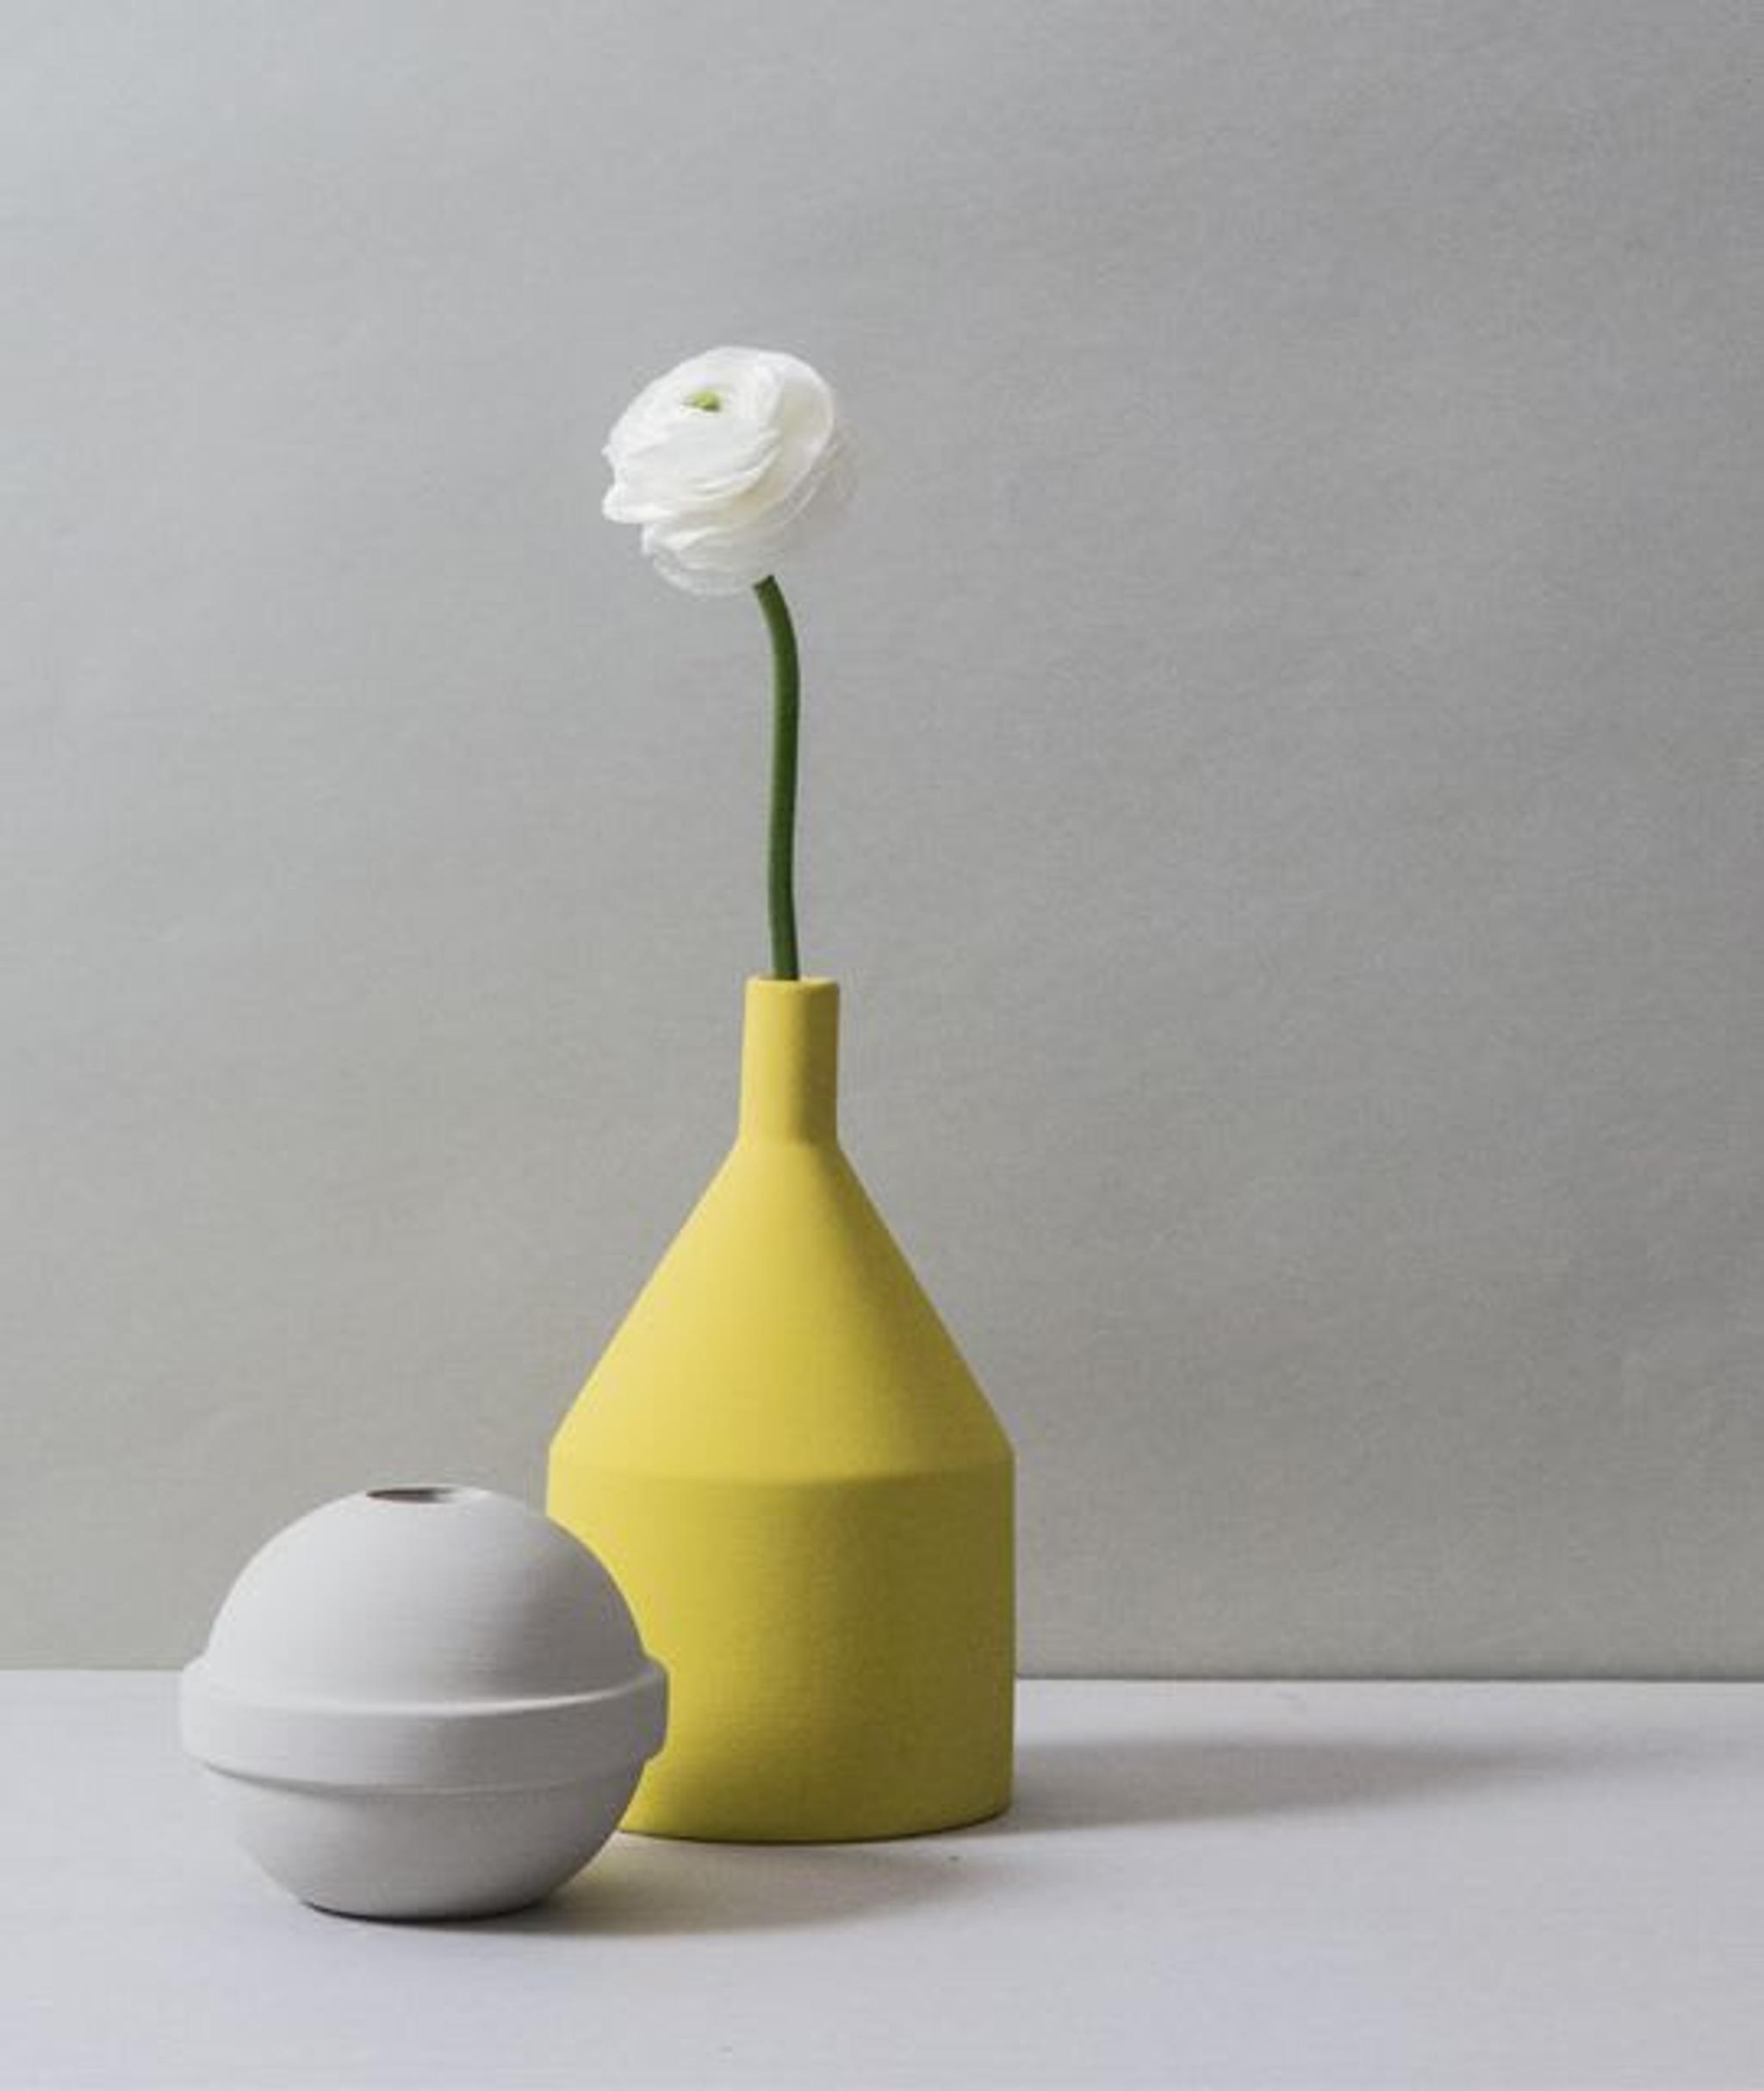 Natura Morta 2 - Vase Set #1 by Sonia Pedrazzini